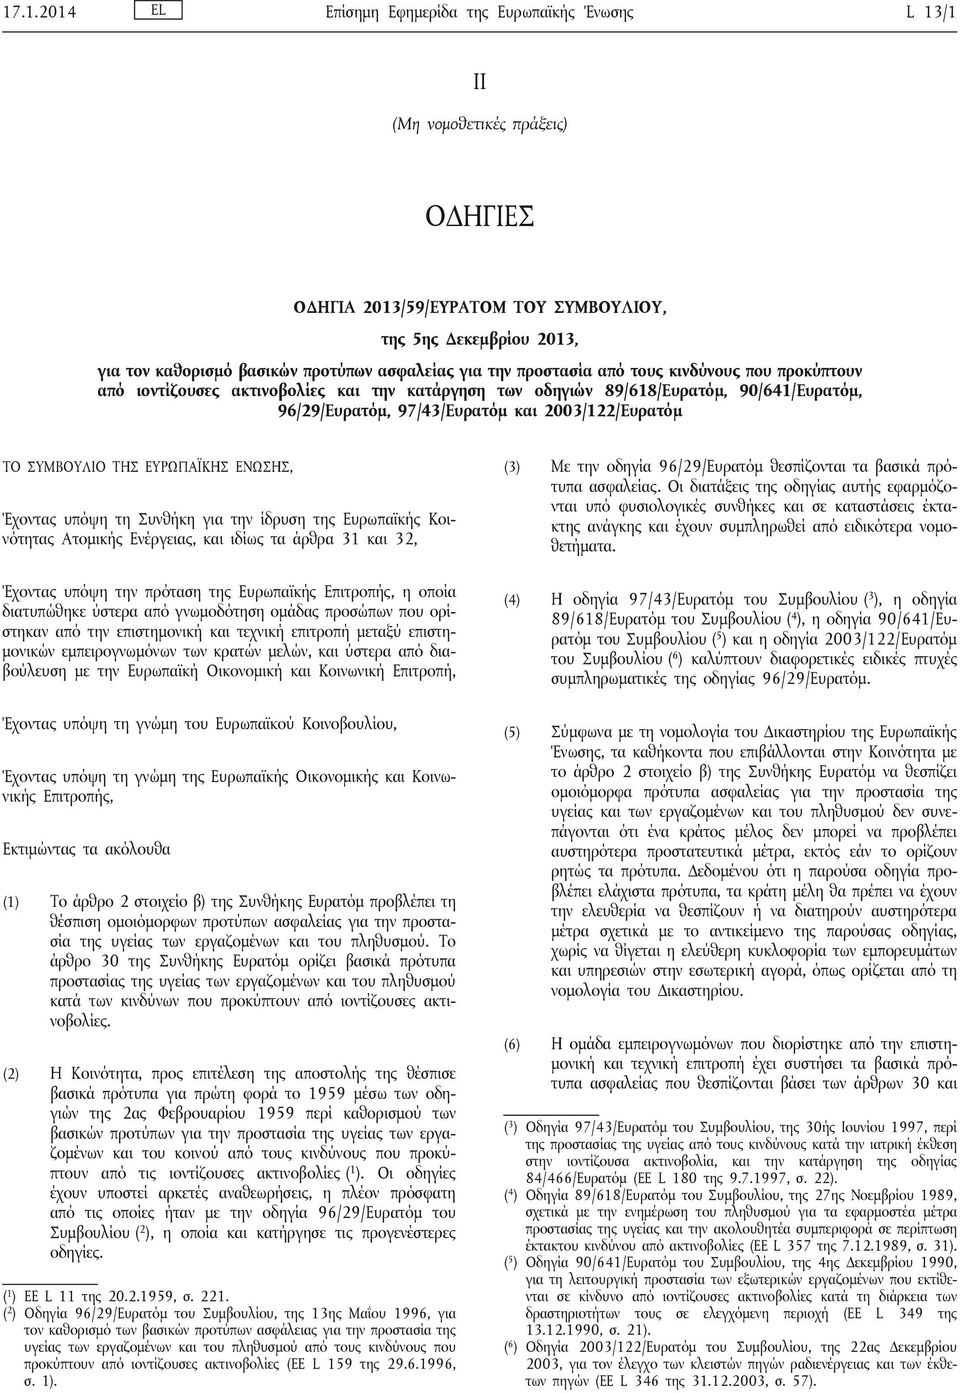 2003/122/Ευρατόμ ΤΟ ΣΥΜΒΟΥΛΙΟ ΤΗΣ ΕΥΡΩΠΑΪΚΗΣ ΕΝΩΣΗΣ, Έχοντας υπόψη τη Συνθήκη για την ίδρυση της Ευρωπαϊκής Κοινότητας Ατομικής Ενέργειας, και ιδίως τα άρθρα 31 και 32, Έχοντας υπόψη την πρόταση της